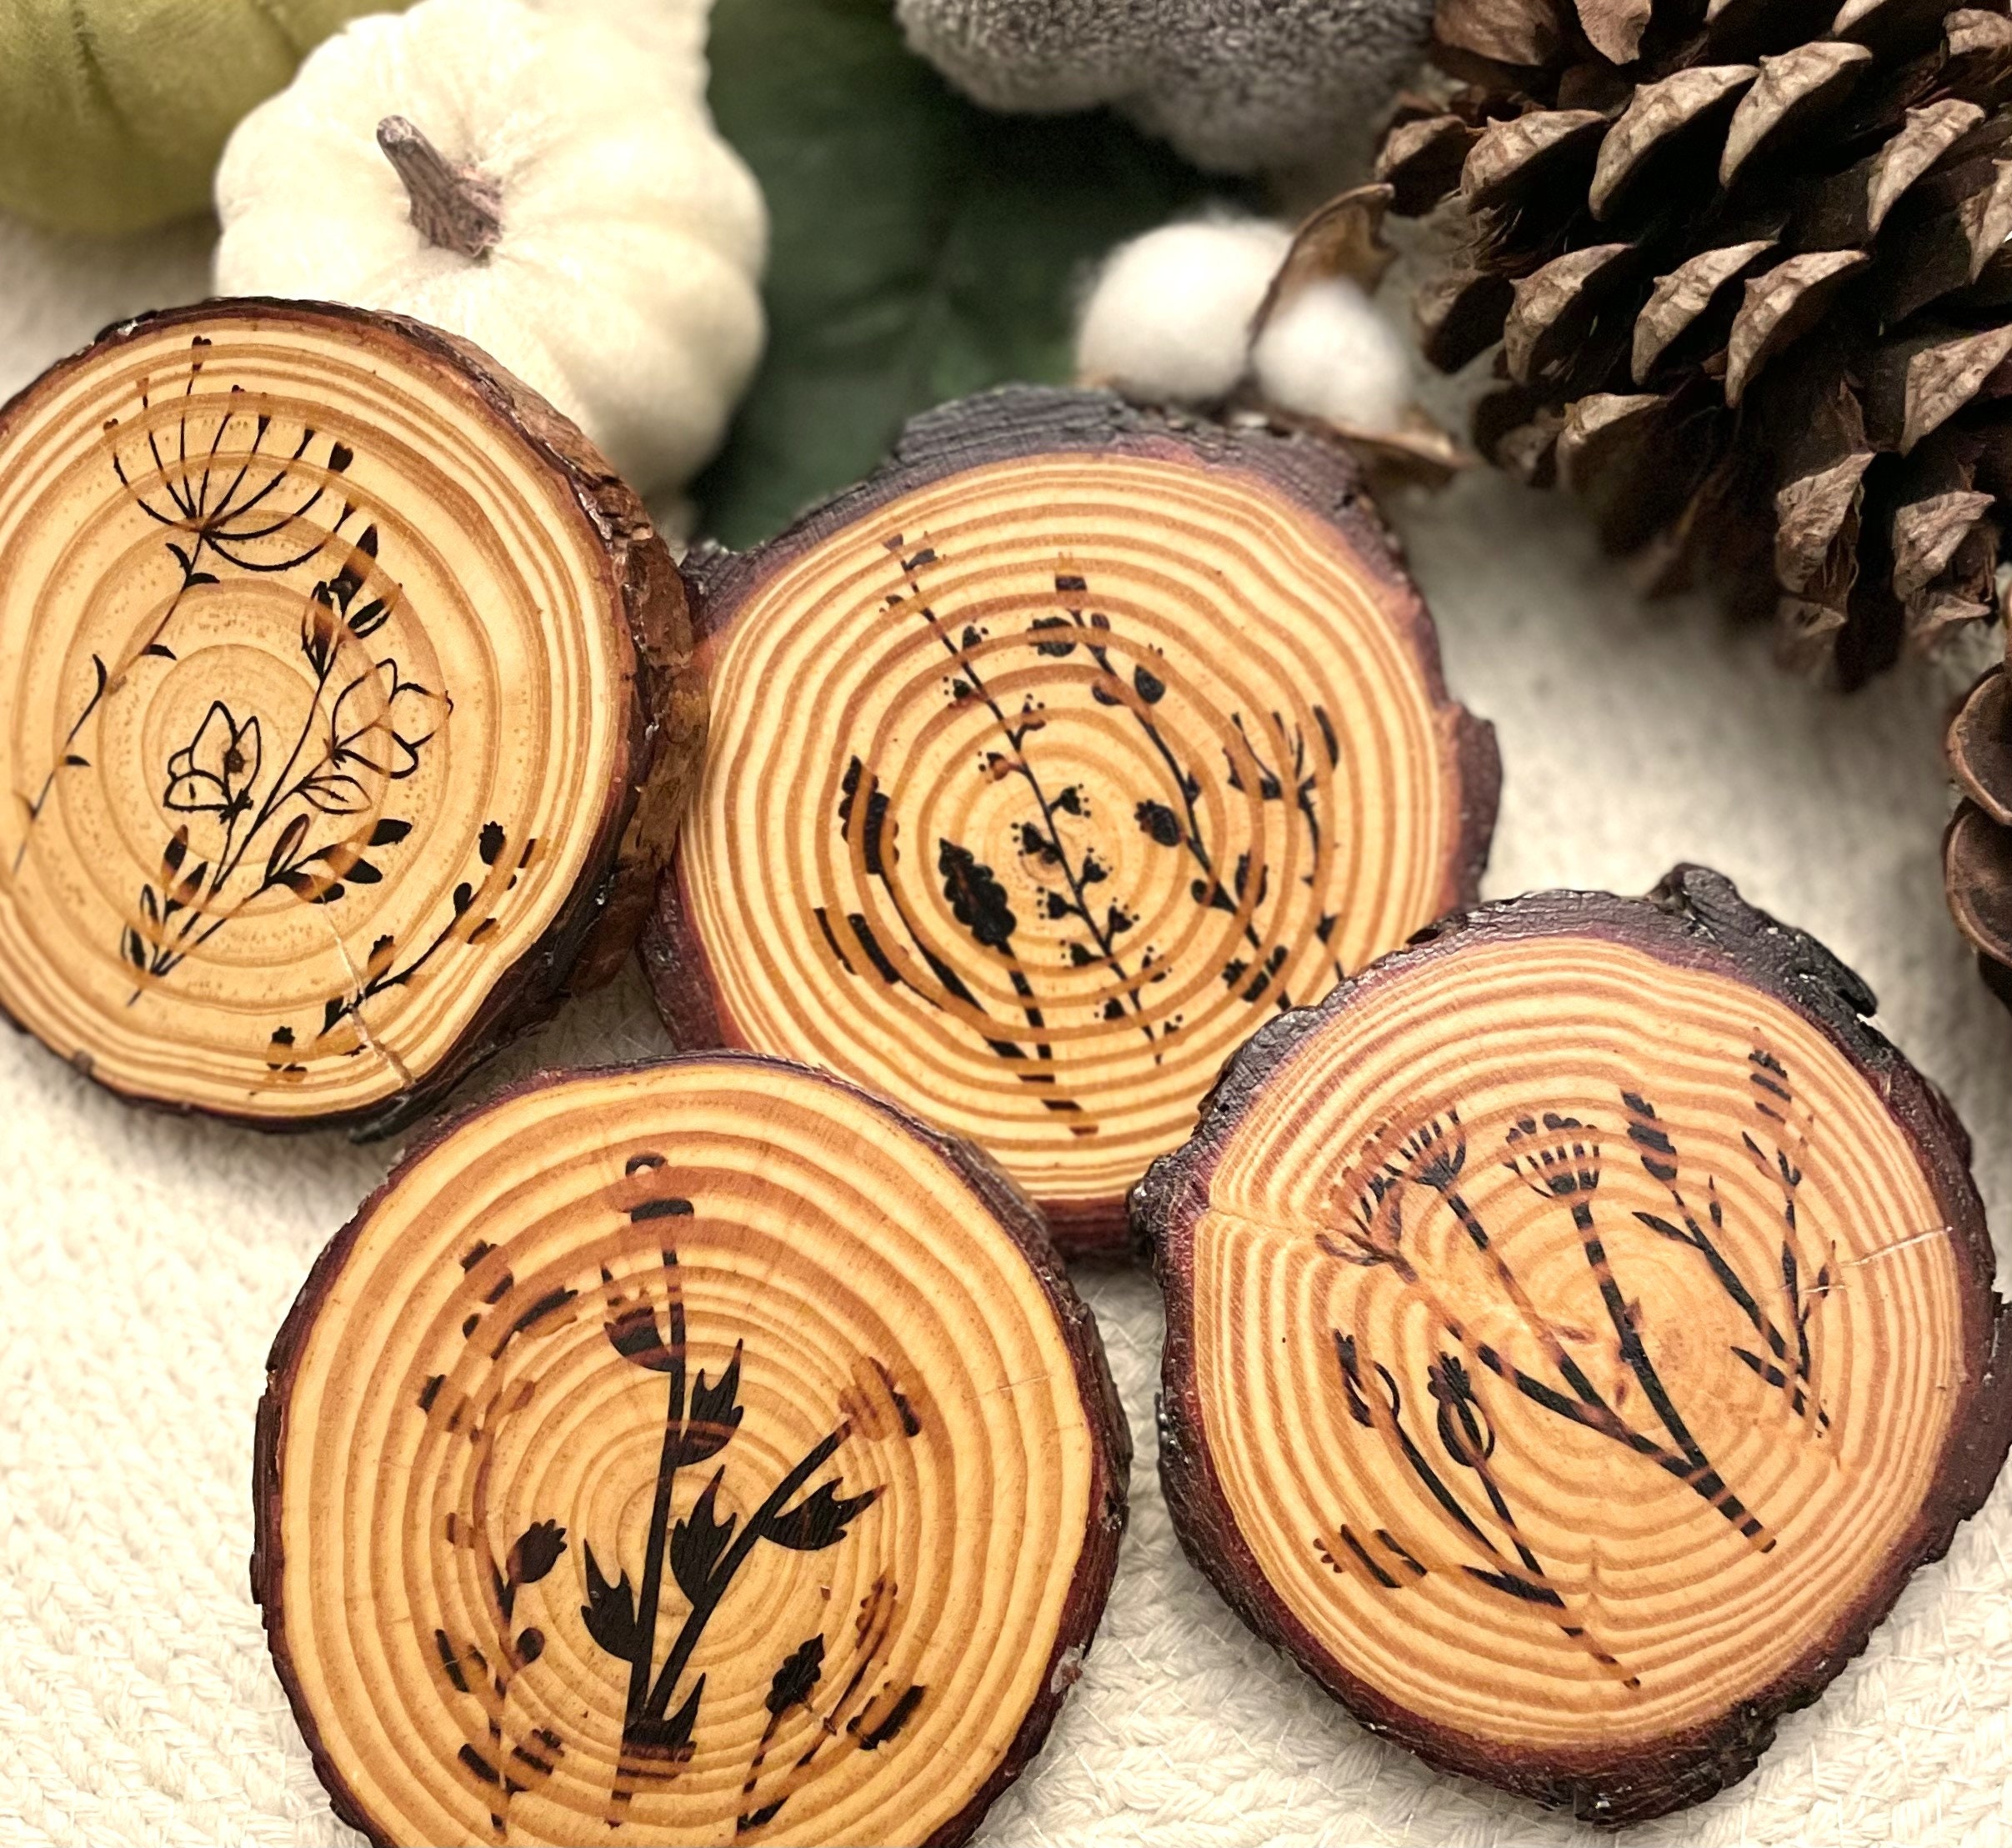 Bohemian Wood Burned Rustic Coasters set of 2 